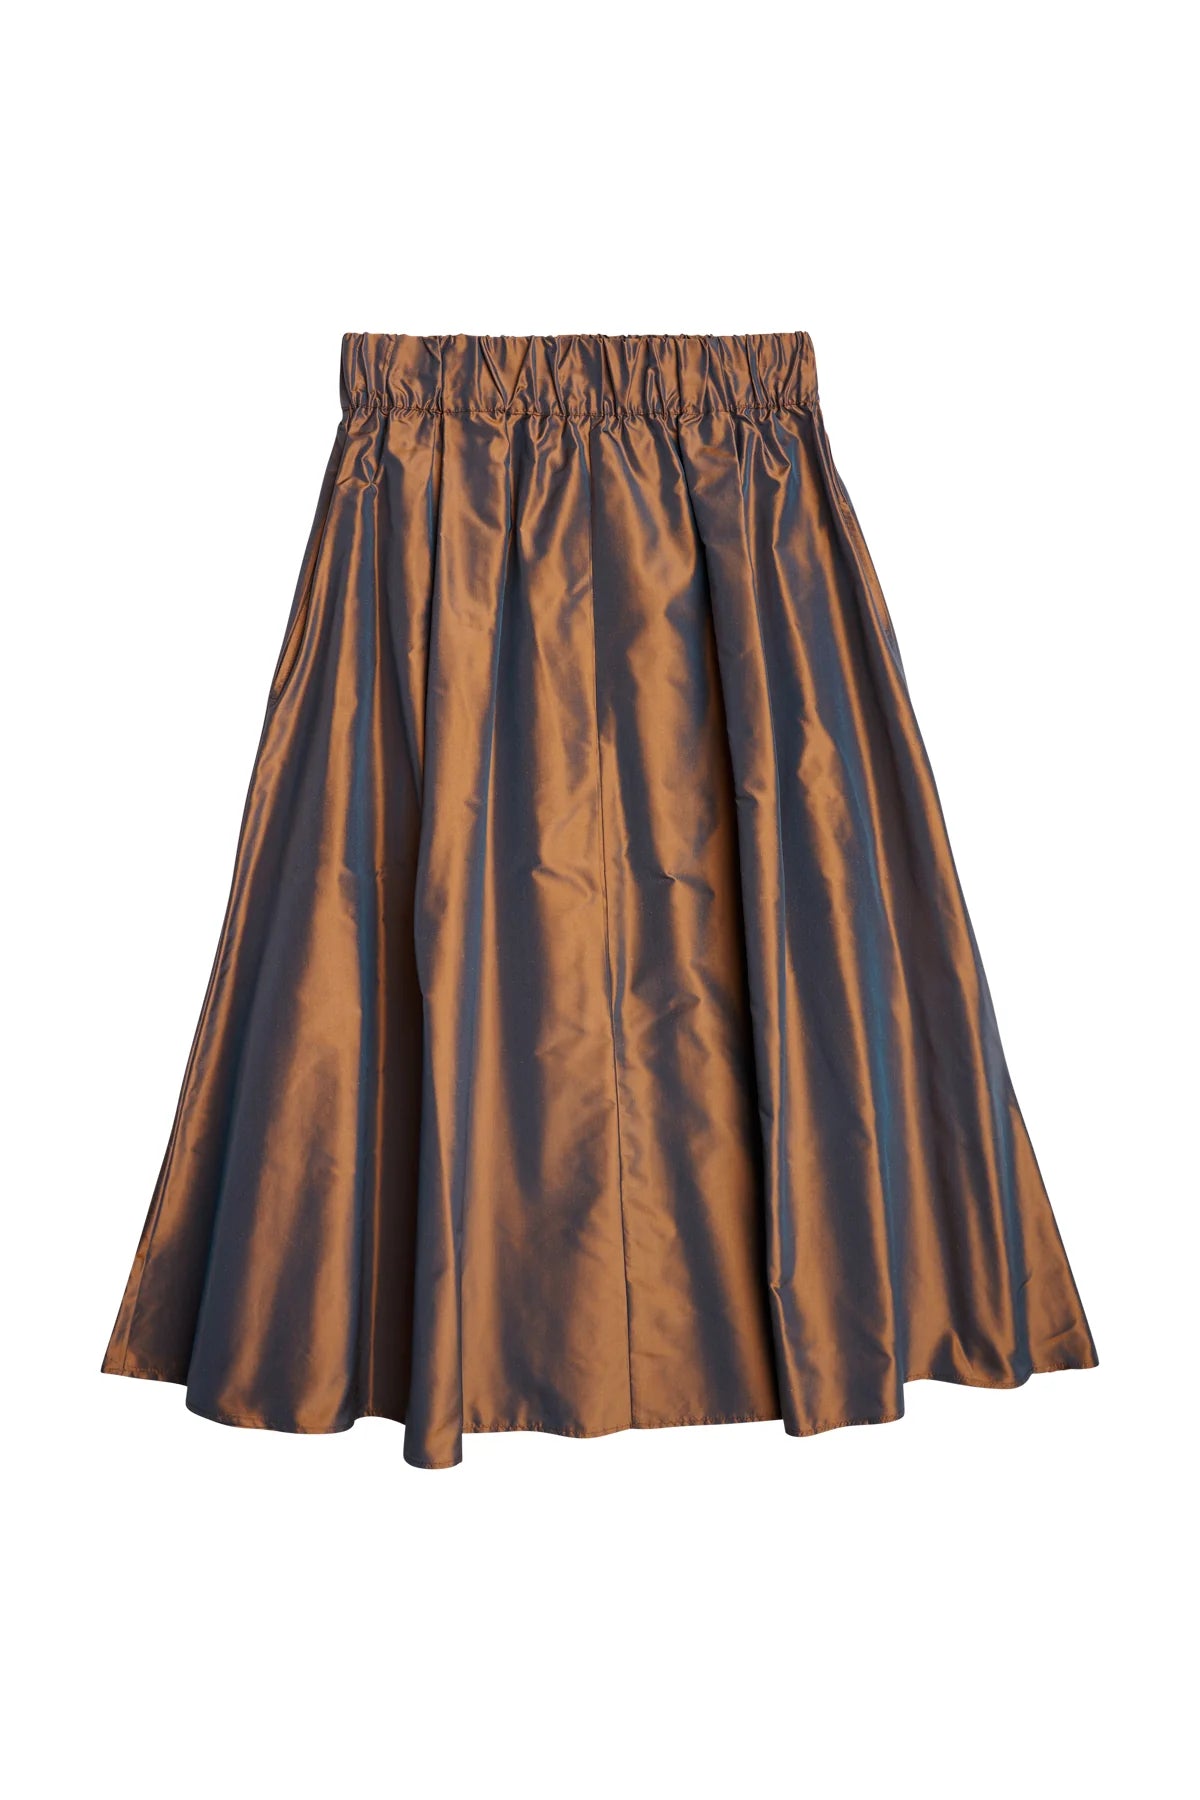 AQC Taffeta Skirt